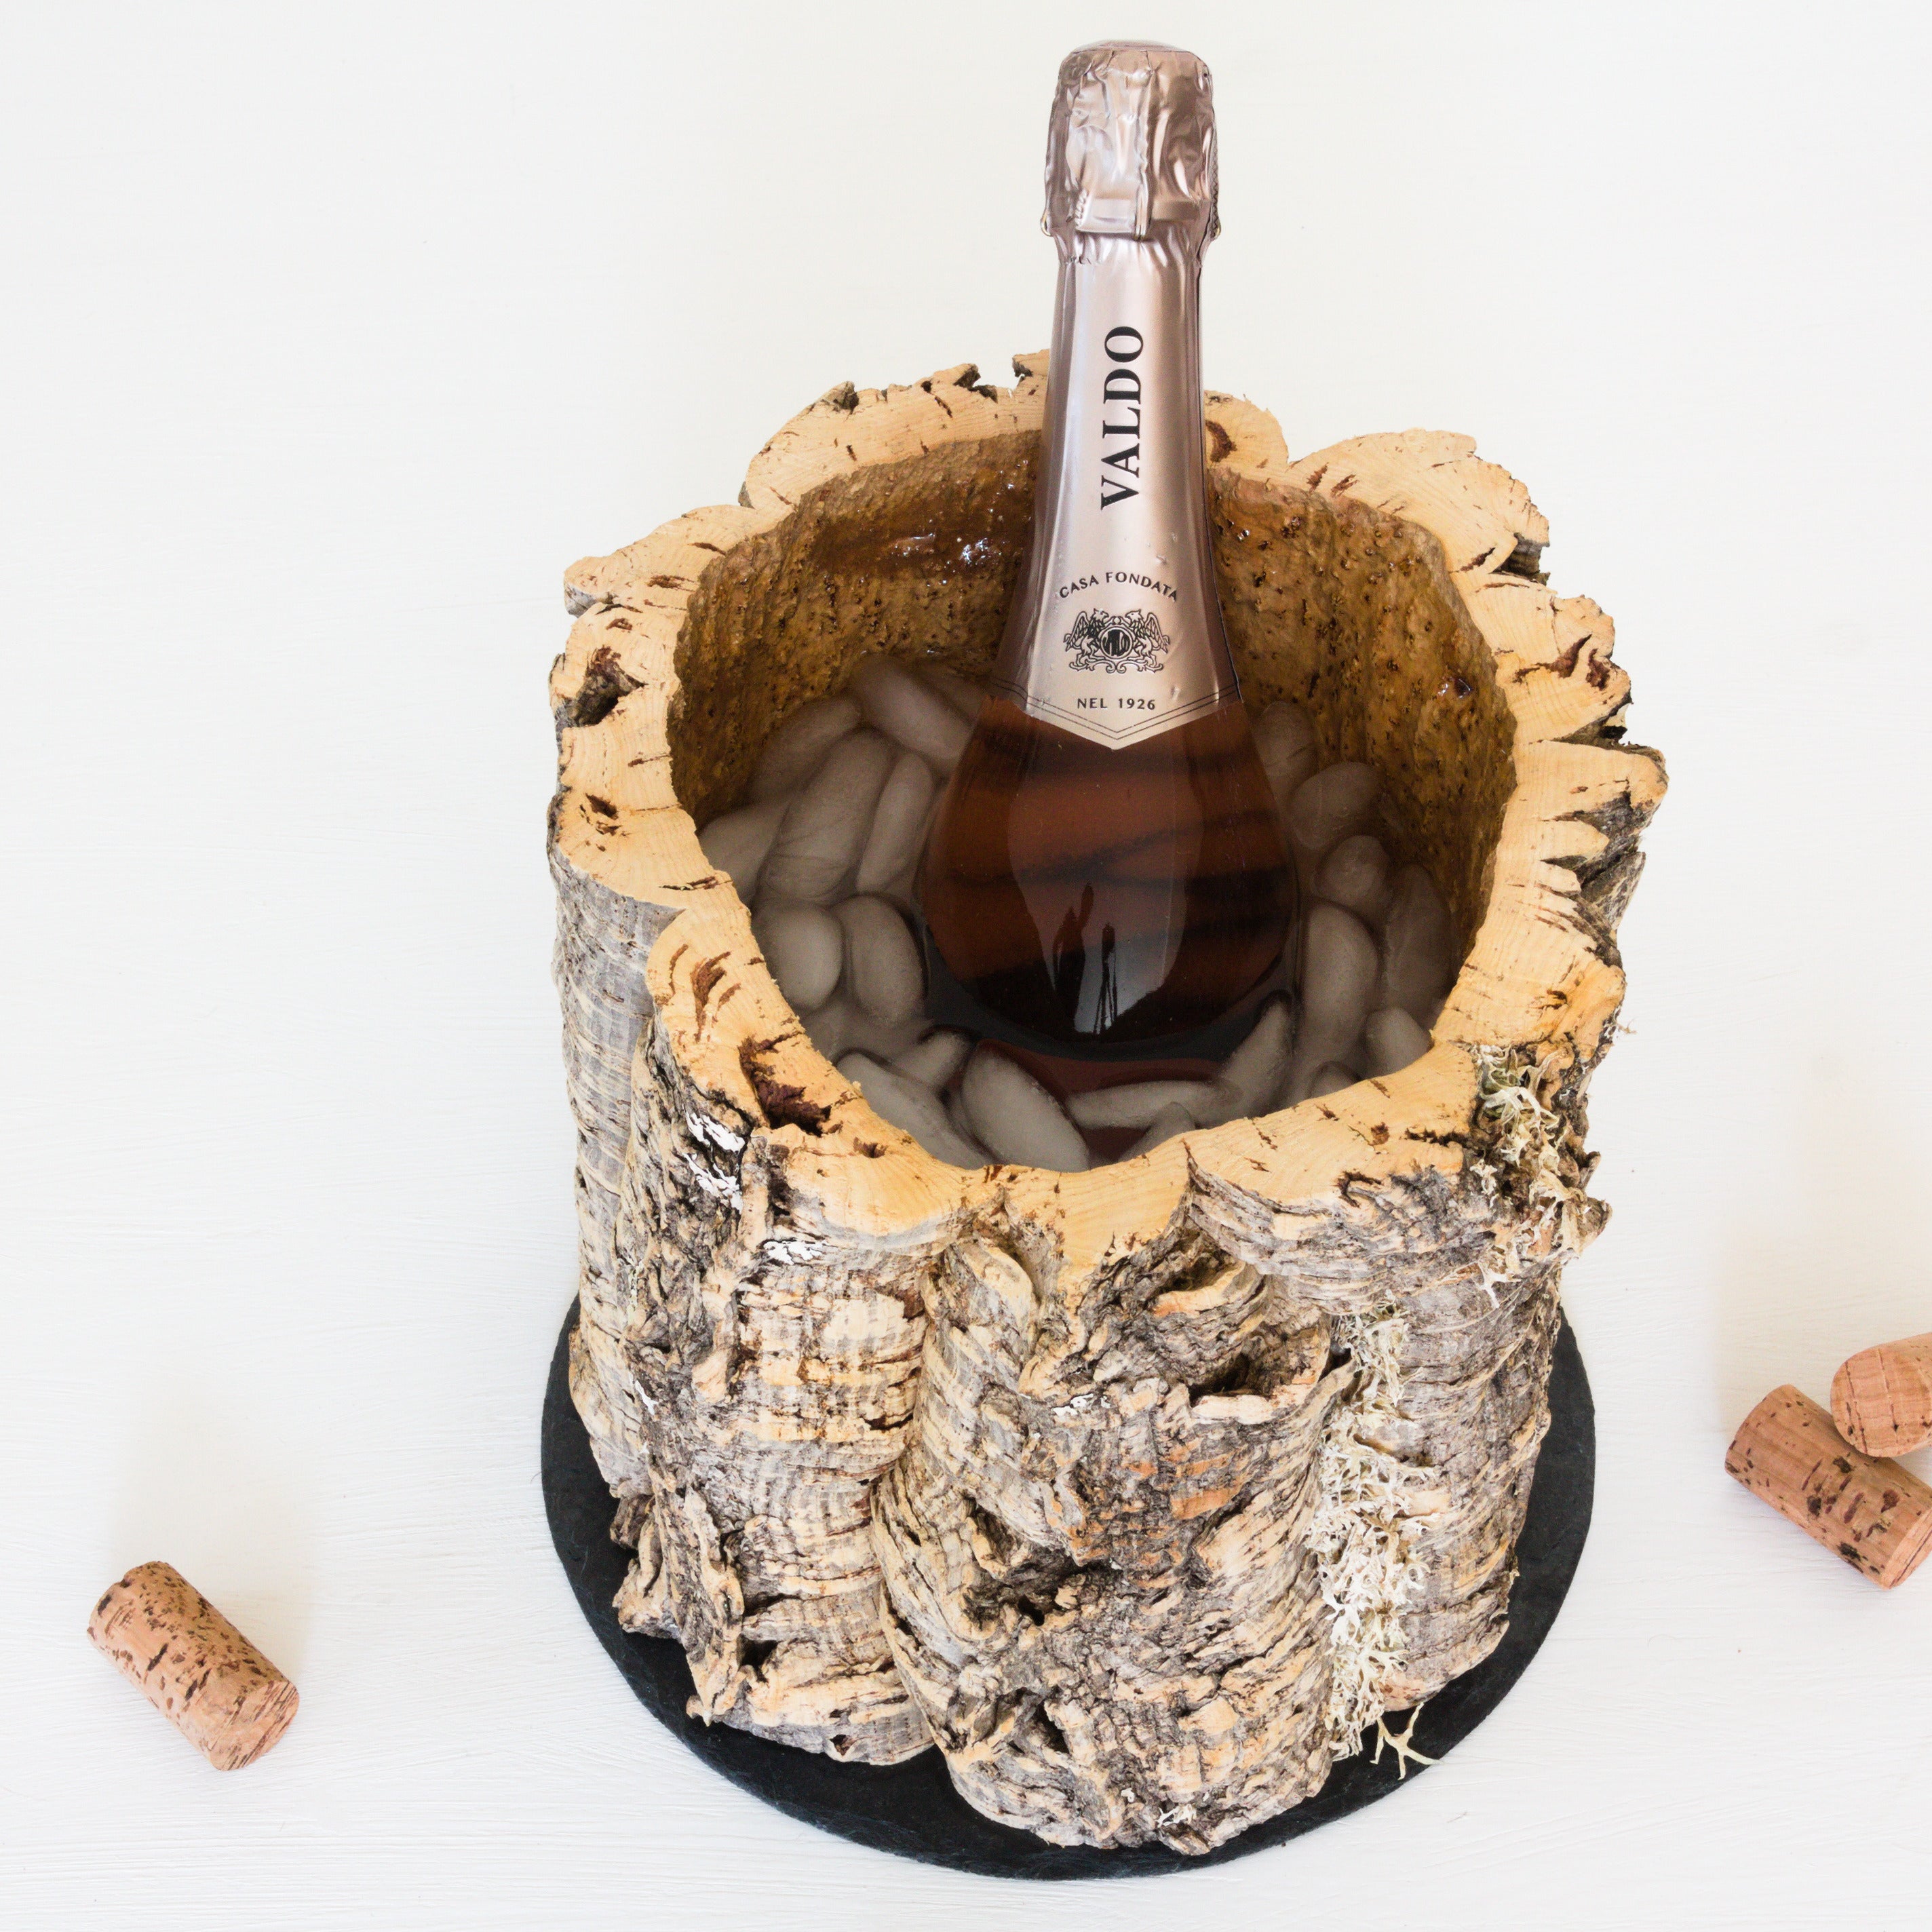 verKORKst premium wine cooler champagne cooler made of cork bark * vintage bottle cooler for champagne, wine, sparkling wine, prosecco * dining table, bar, garden